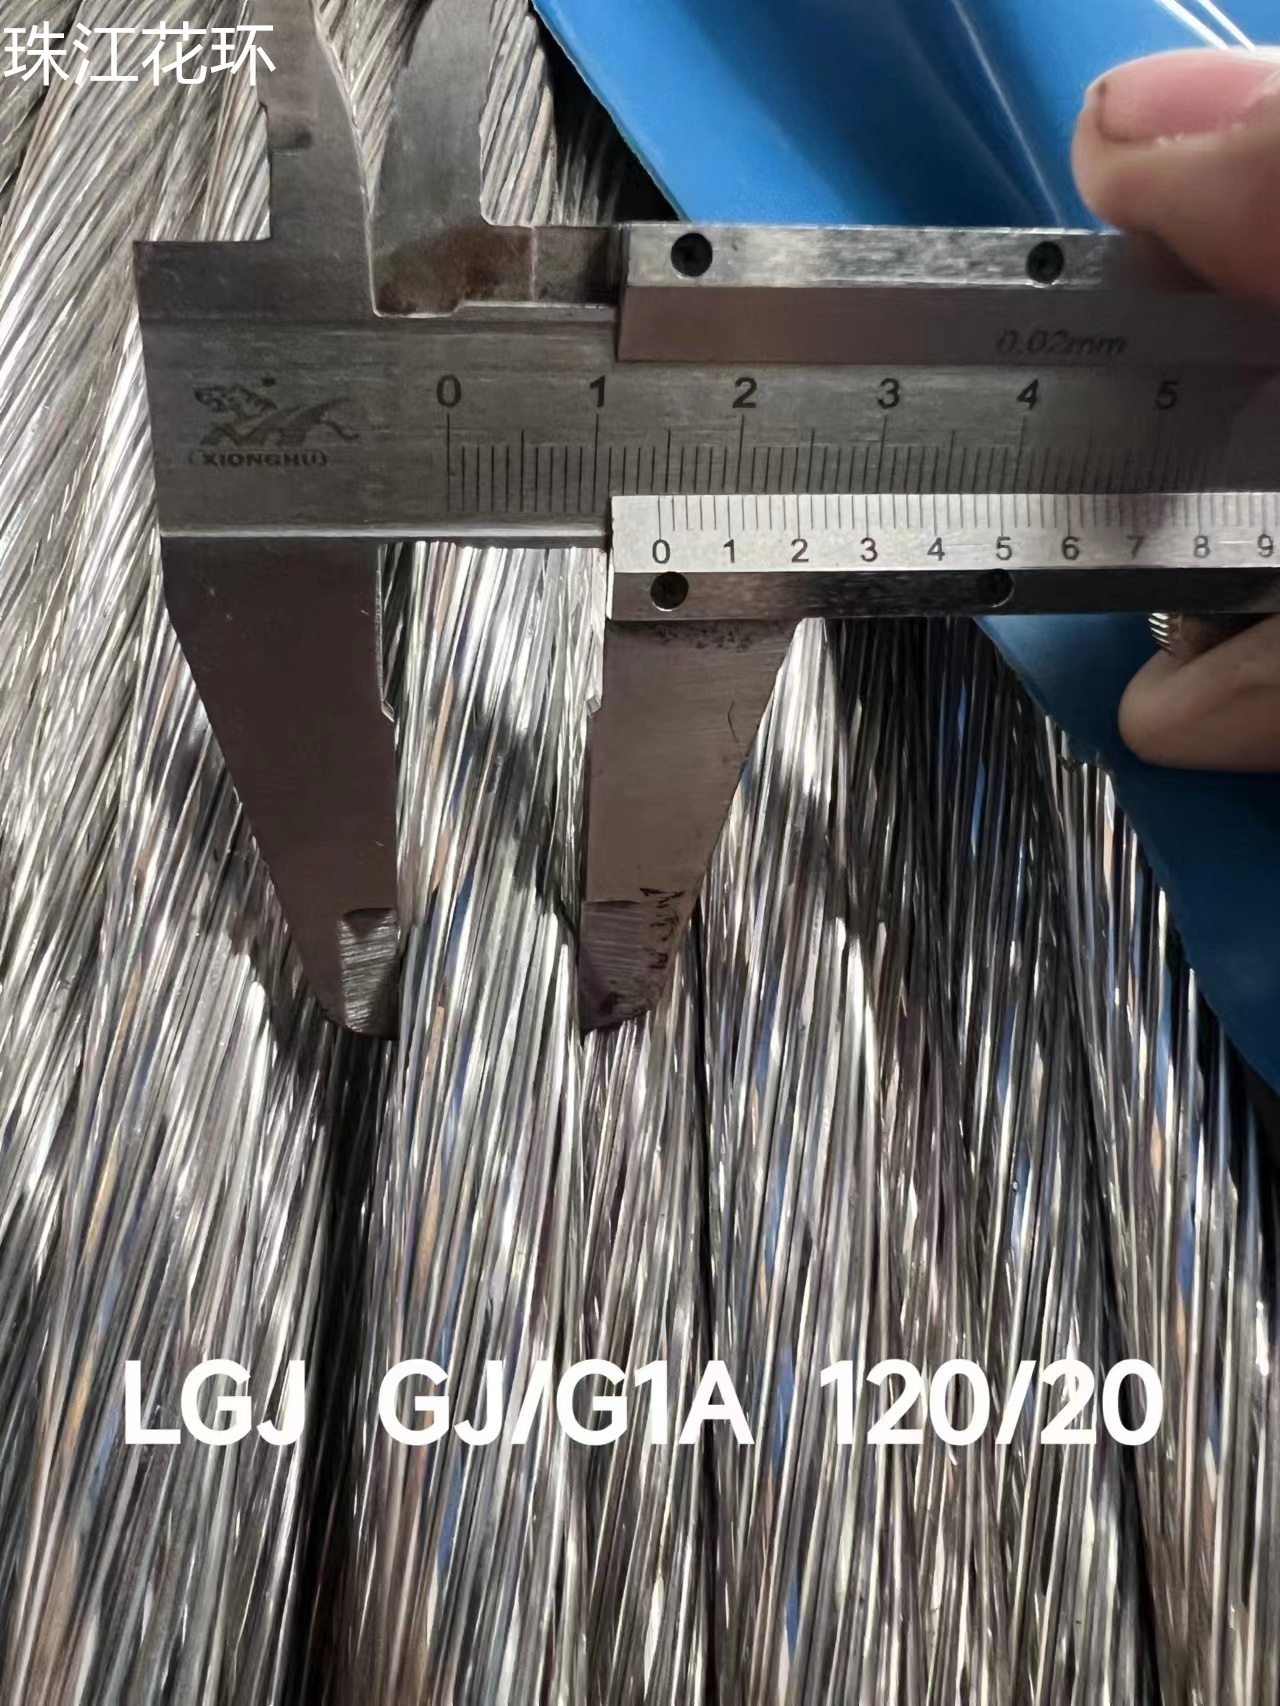 中业电缆LGJ GJ/G1A 120/20 钢芯铝绞线